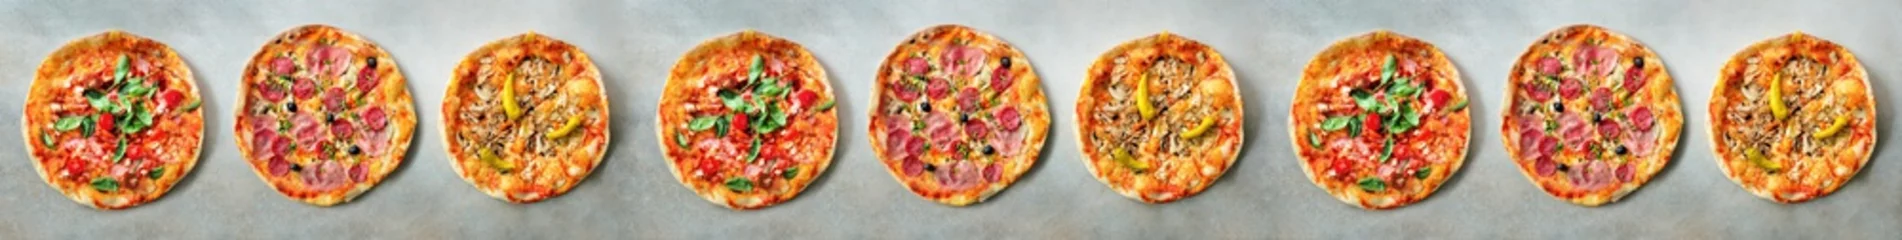 Wandaufkleber Pizza-Muster. Neun Stücke auf grauem Betonhintergrund. Ansicht von oben, Exemplar © jchizhe